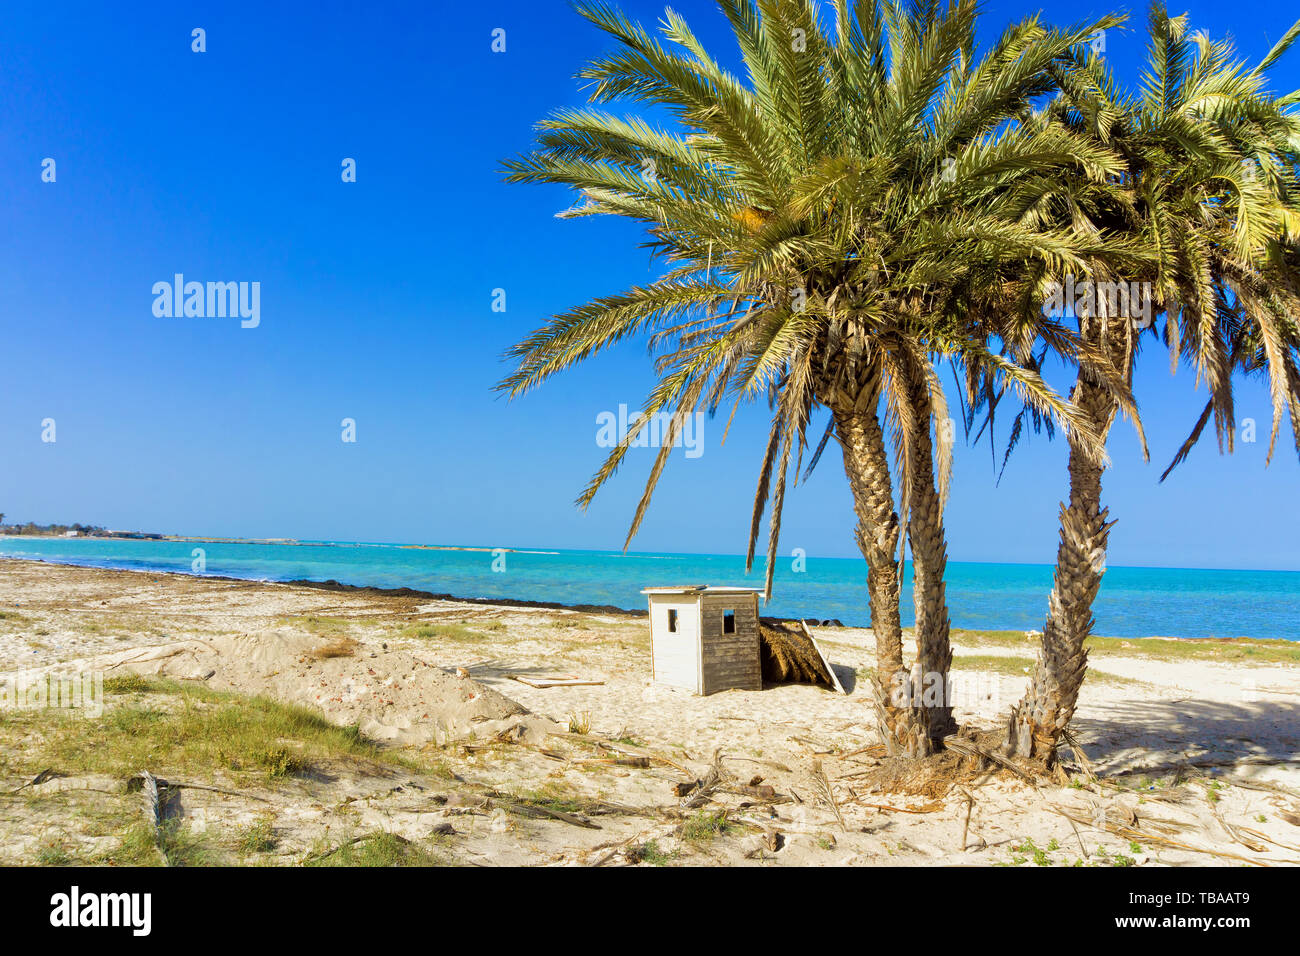 Le paysage magnifique de la mer Méditerranée avec des palmiers à Djerba, Tunisie Banque D'Images